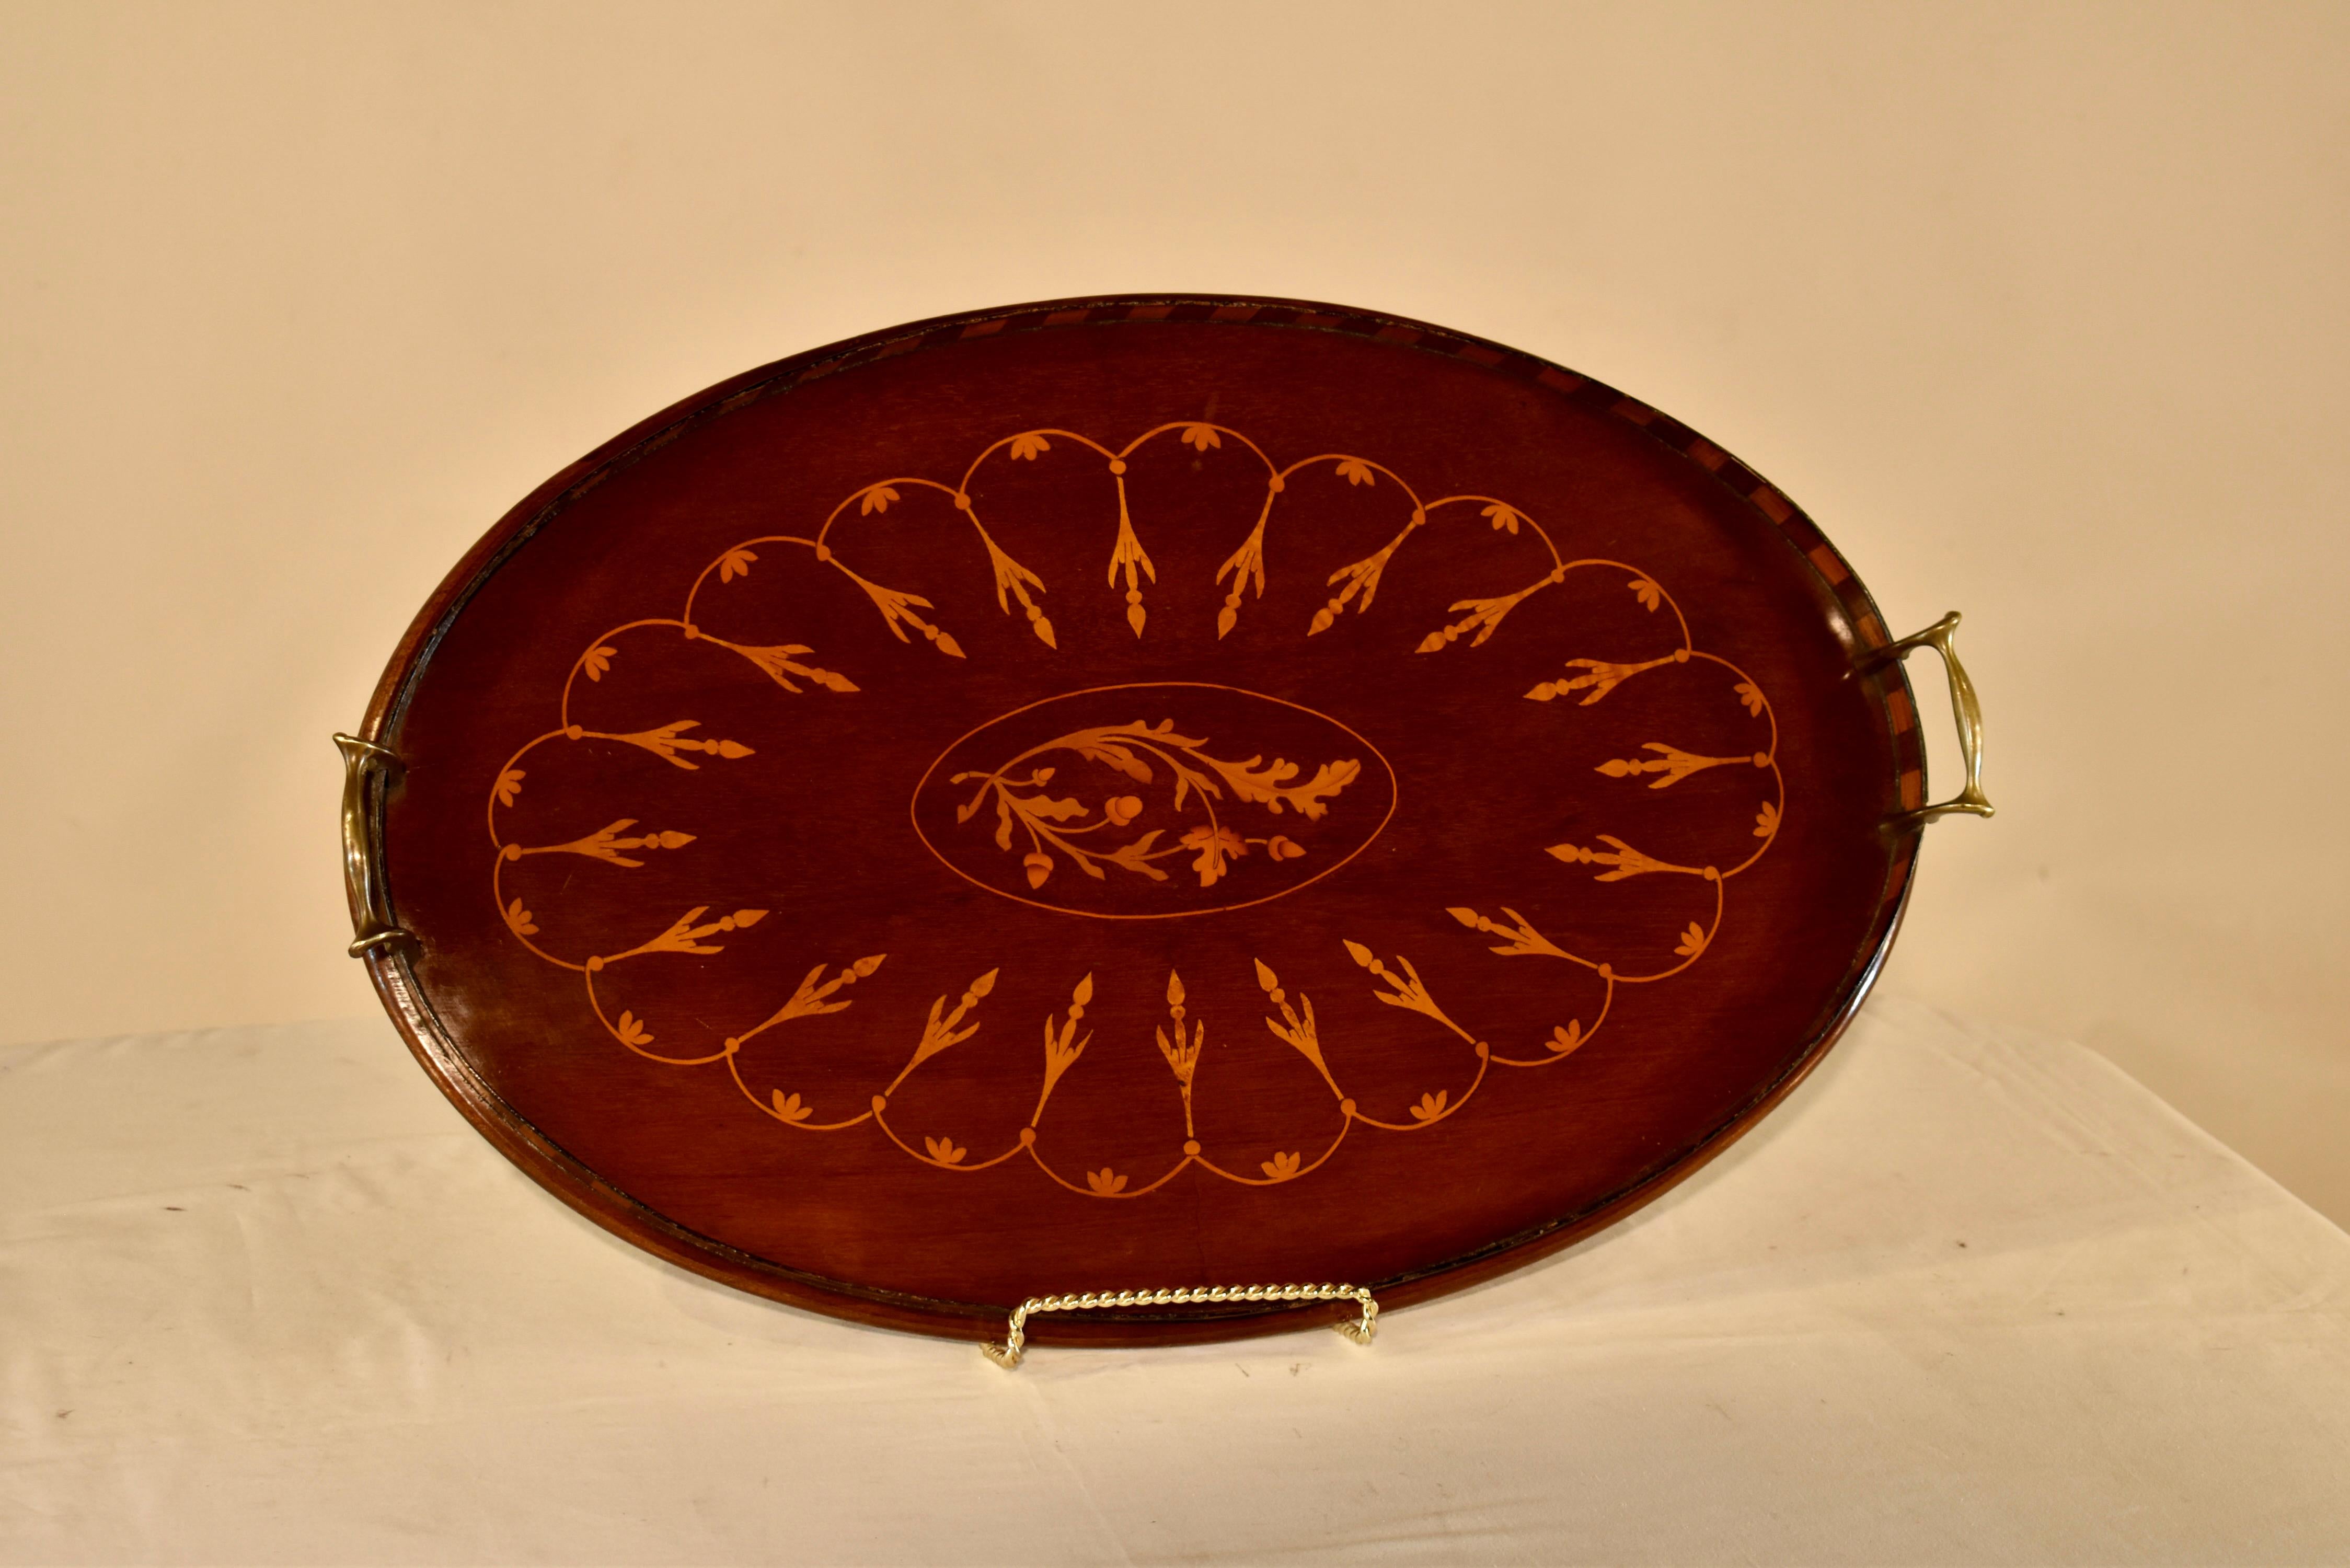 Mahagoni-Tablett aus England aus dem 19. Jahrhundert mit einem schönen Muster aus Blättern und Eicheln eingelegt. Um die zentrale Raute aus Blättern und Eicheln herum befindet sich ein Wellenmuster, das das Tablett einrahmt und für zusätzliches